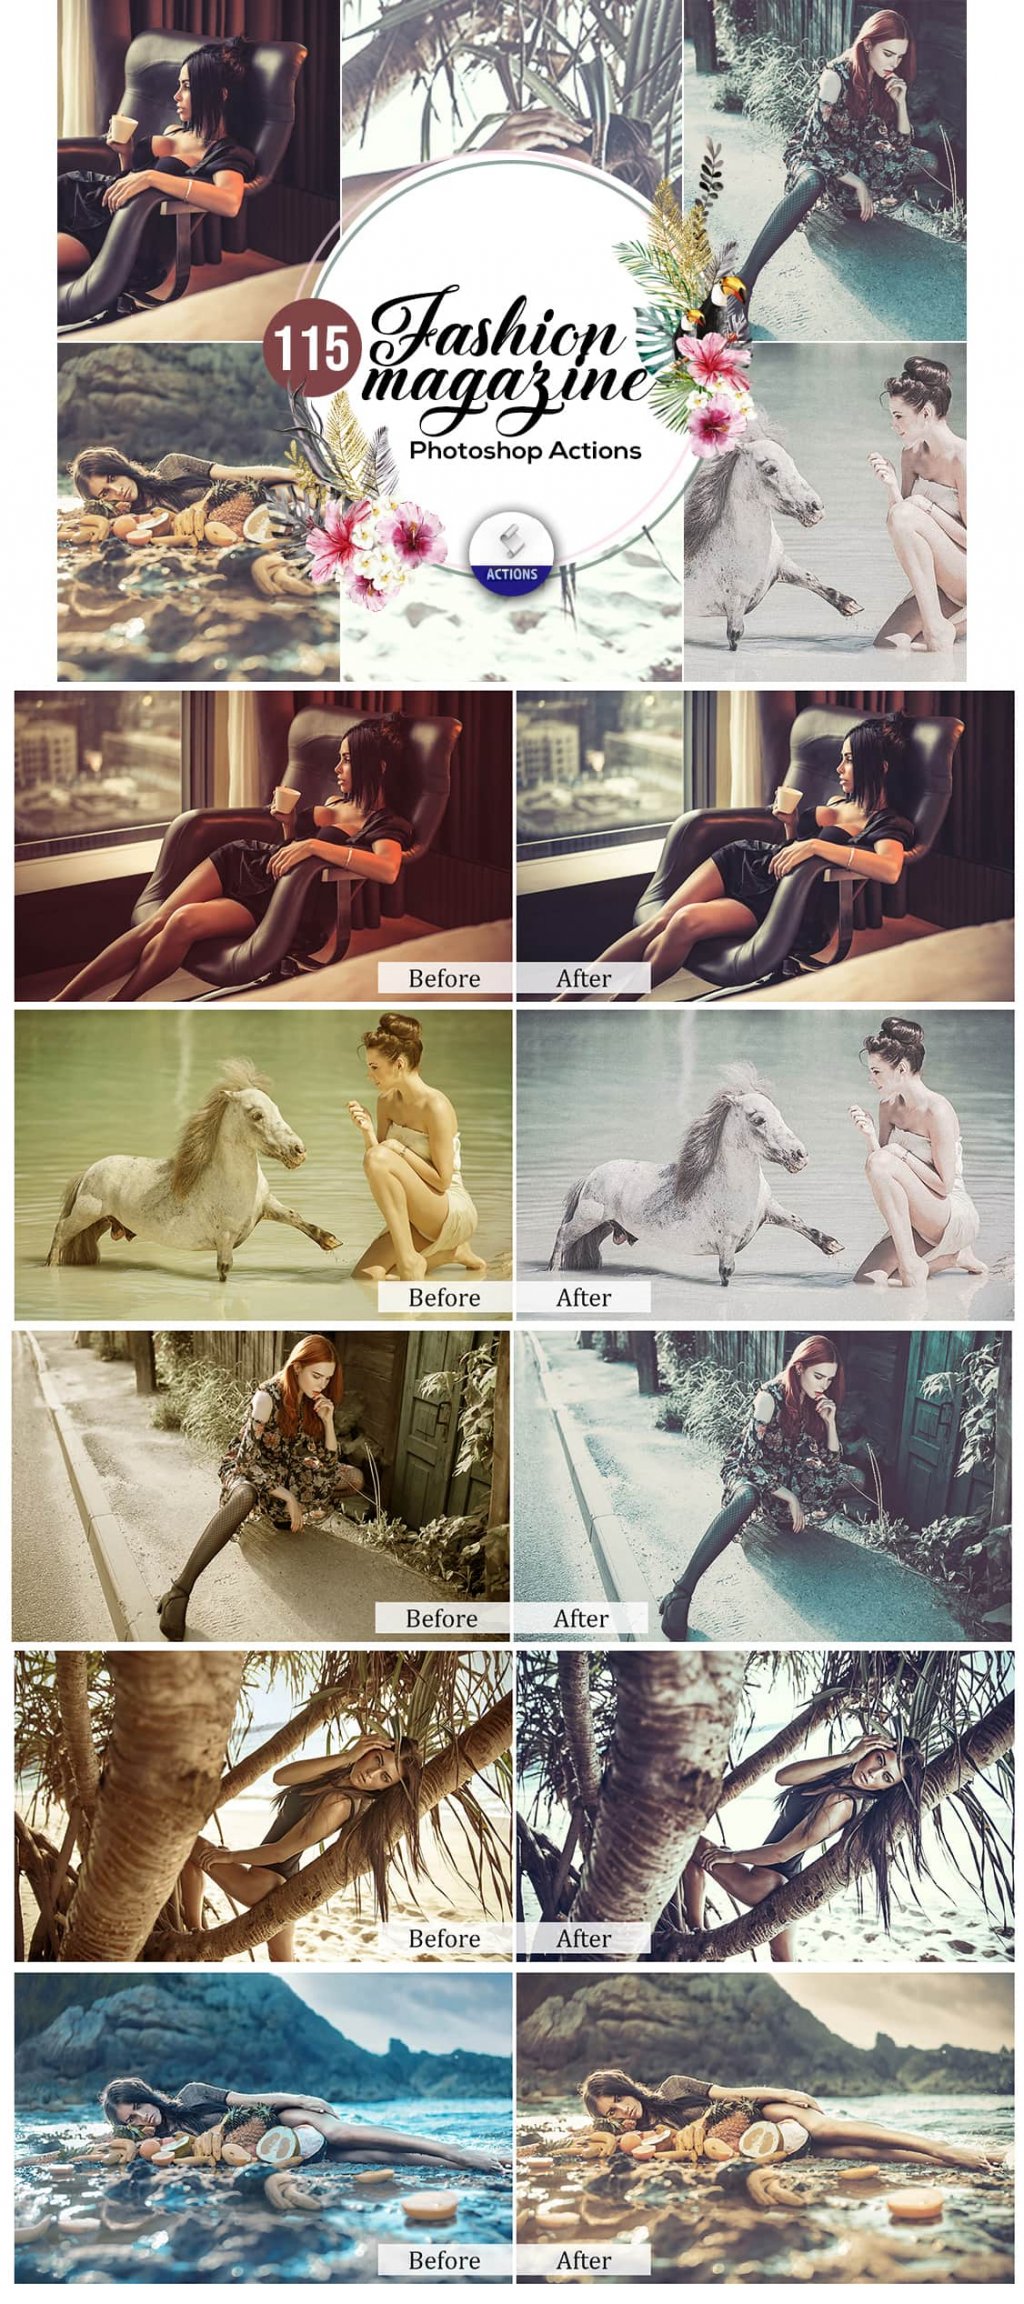 Fashion magazine photoshop actions